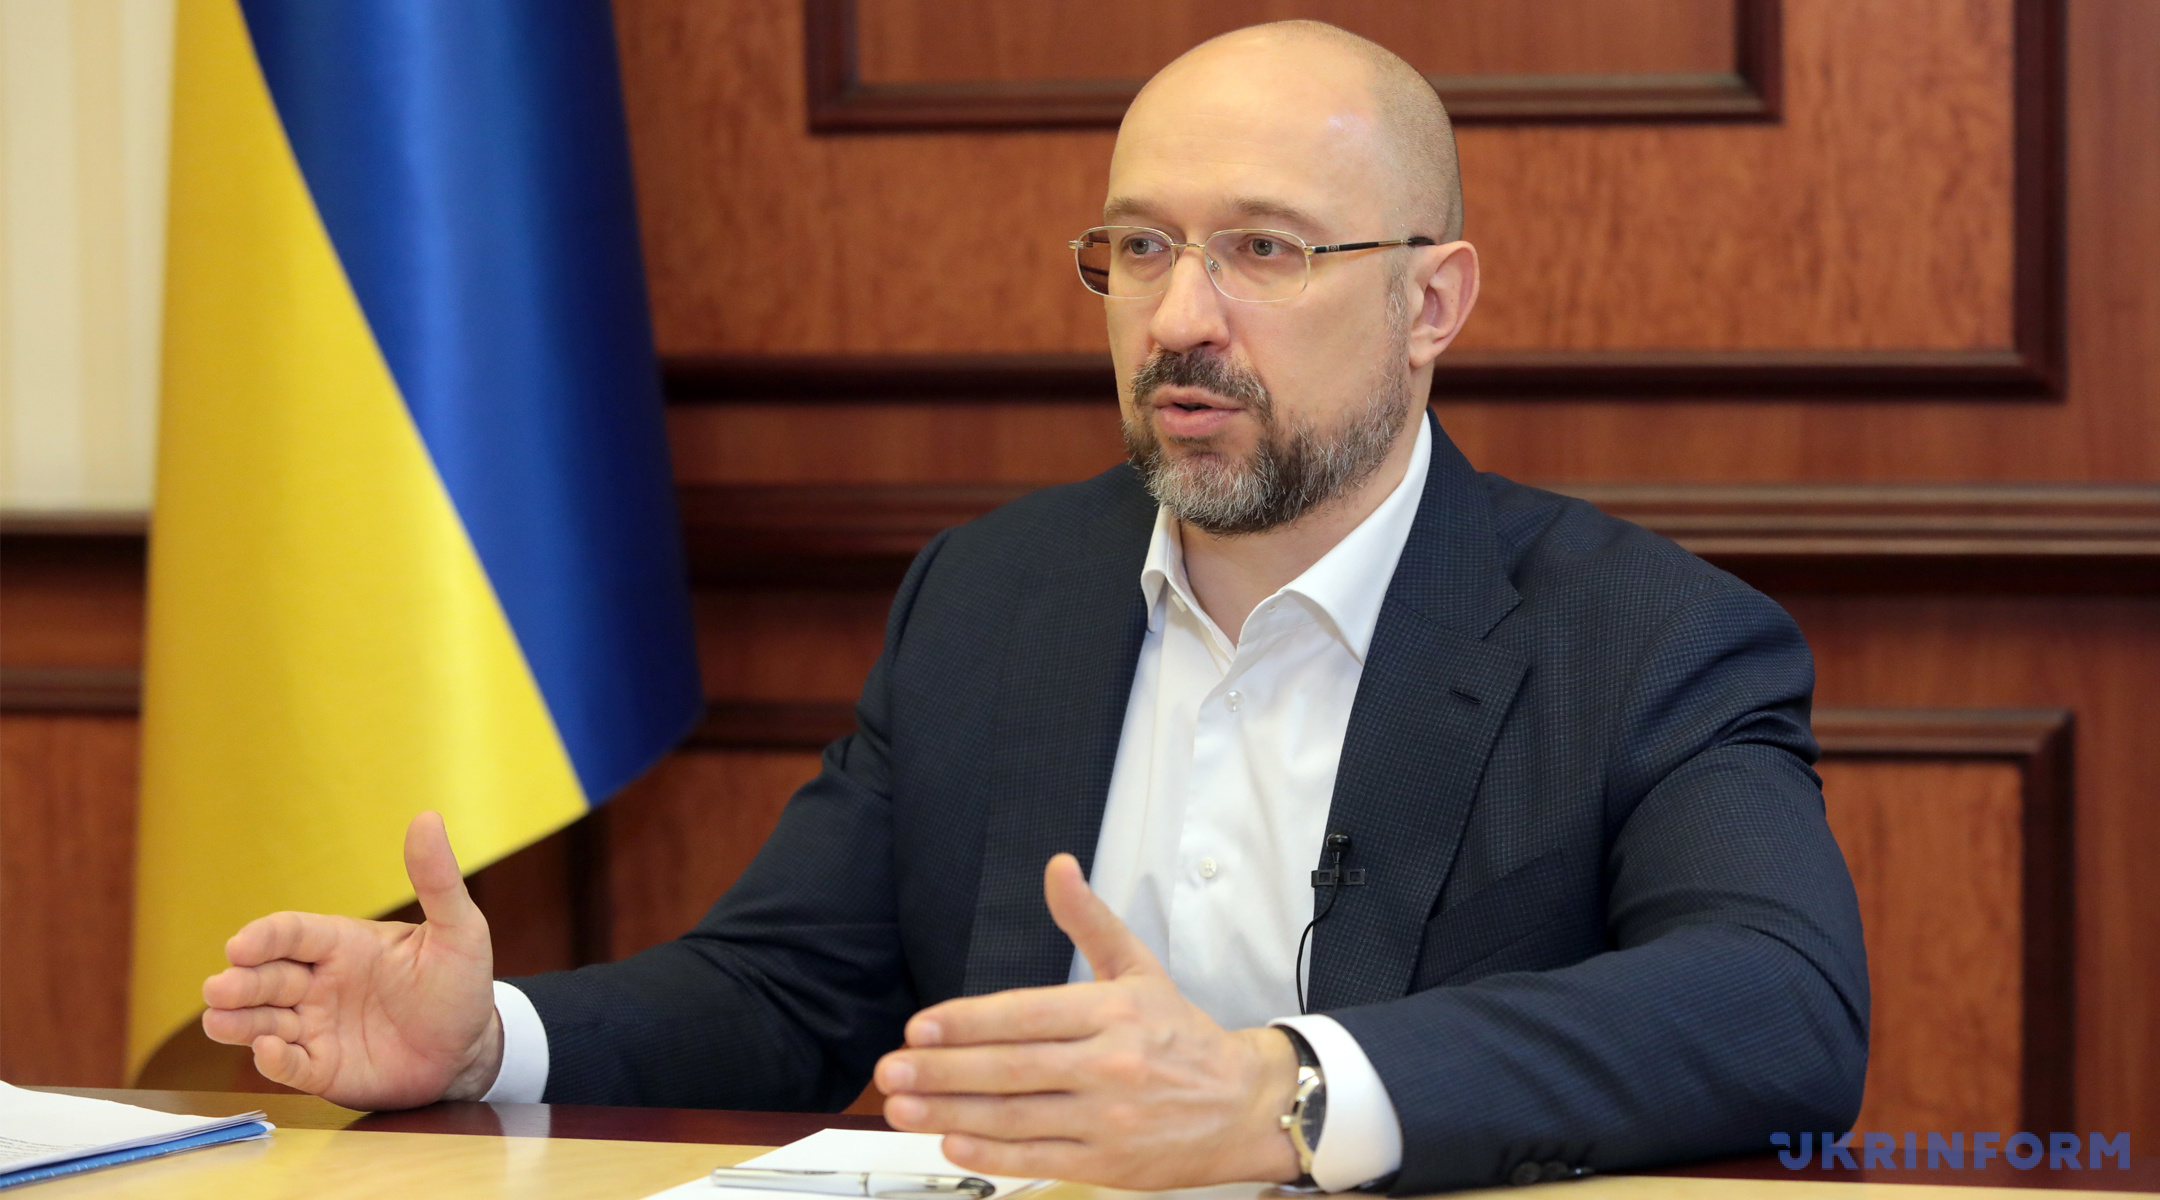 Denys Shmyhal, Prime Minister of Ukraine